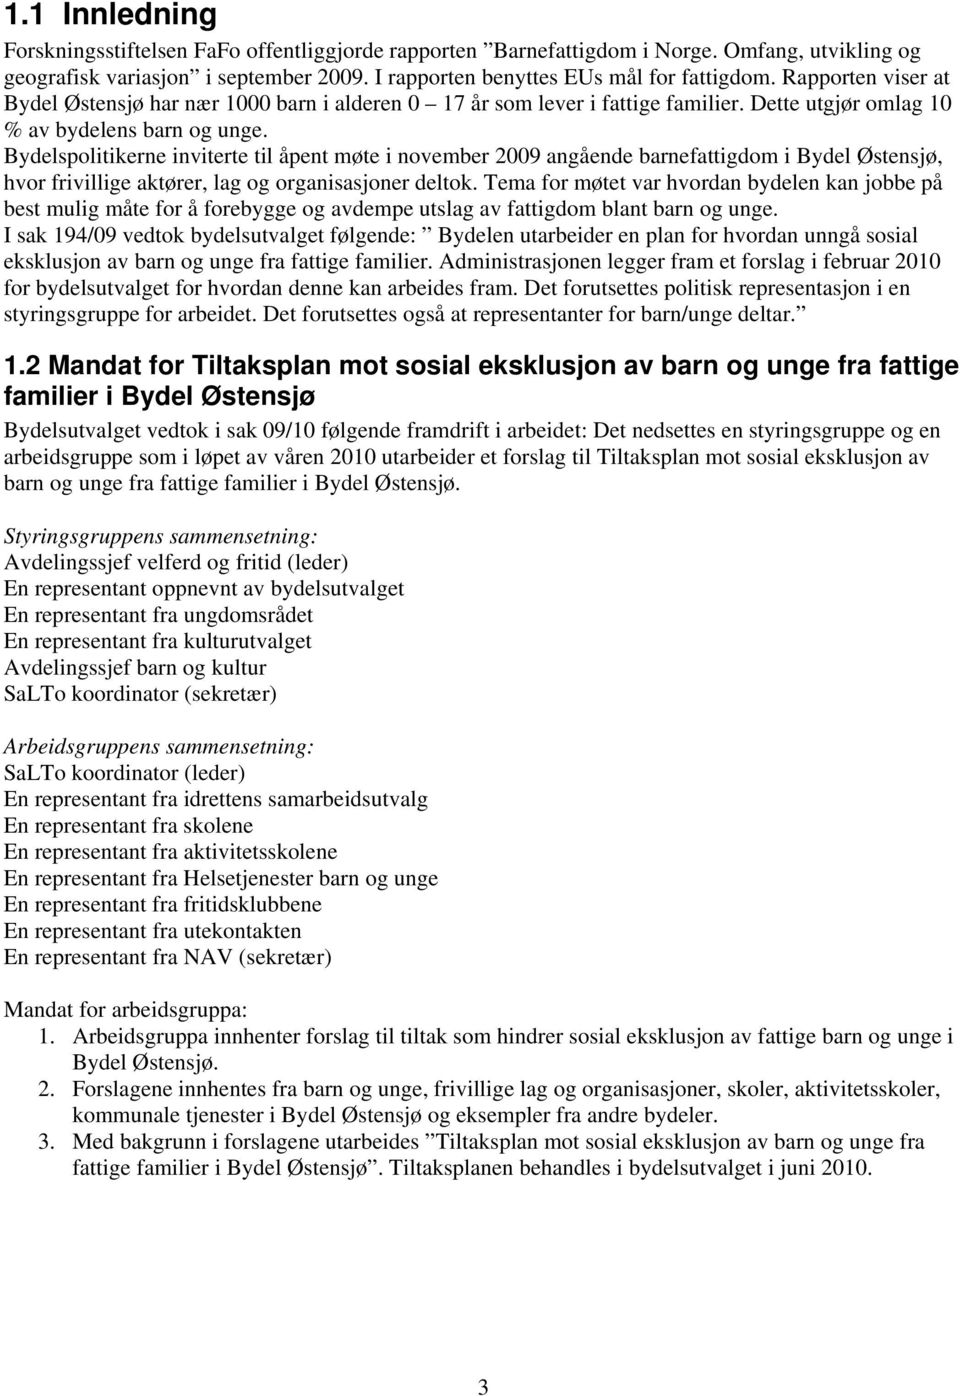 Bydelspolitikerne inviterte til åpent møte i november 2009 angående barnefattigdom i Bydel Østensjø, hvor frivillige aktører, lag og organisasjoner deltok.